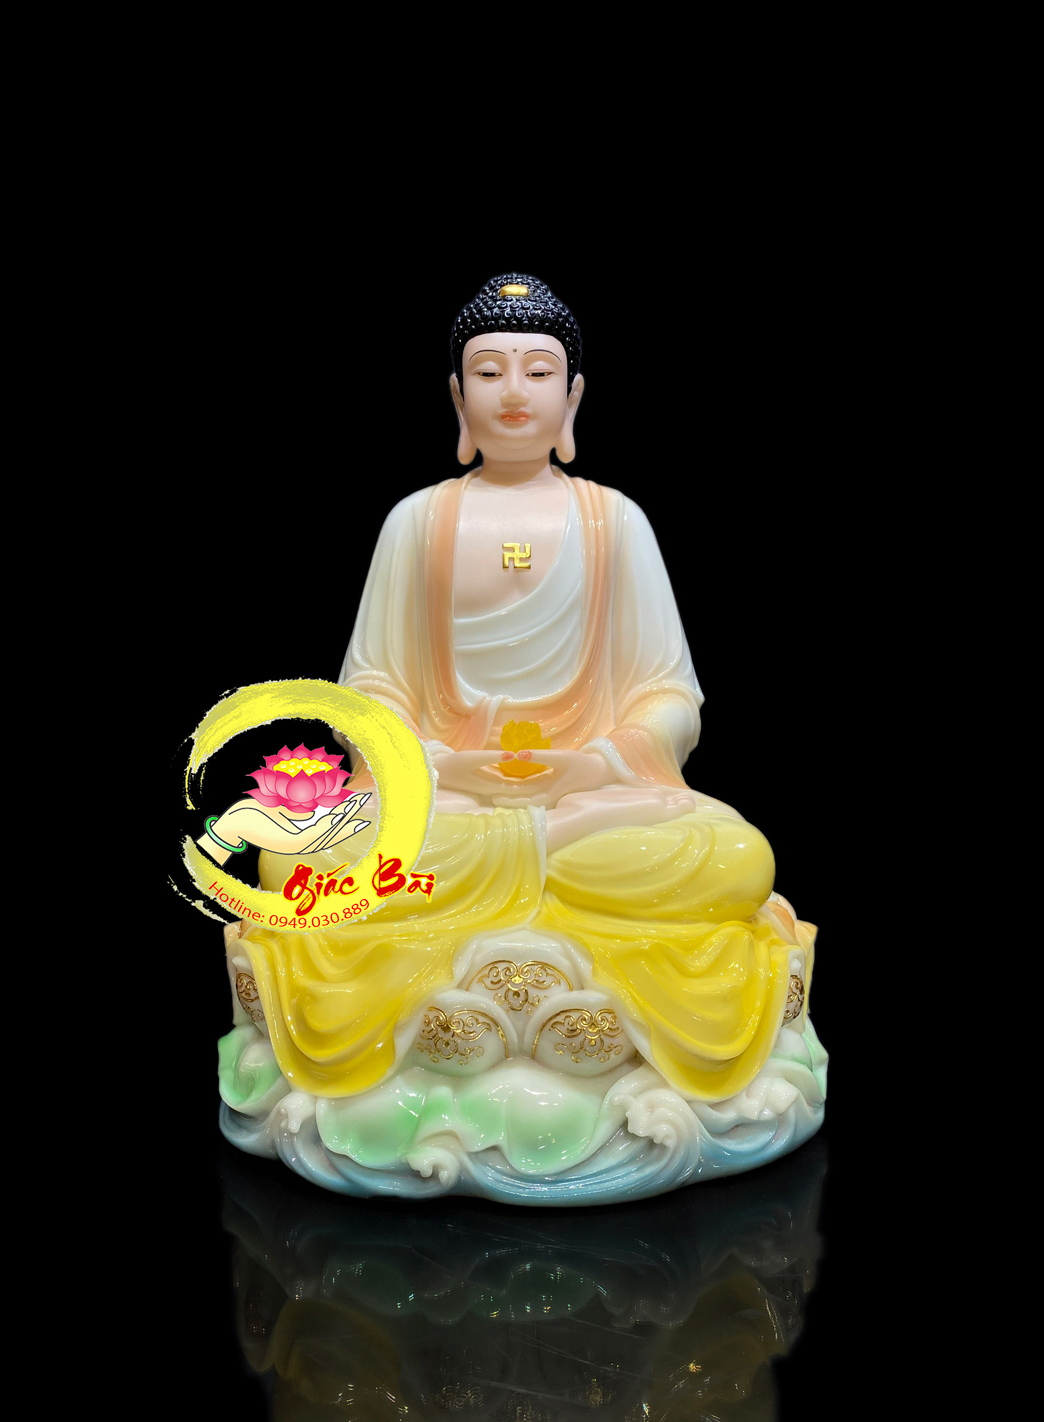 Hình ảnh một tượng Phật A Di Đà trong trang phục đầy sắc màu và hạnh phúc sẽ đưa bạn vào thế giới của sự yên tĩnh và an lạc, giúp bạn tìm thấy định hướng và trật tự trên con đường phát triển tâm linh.